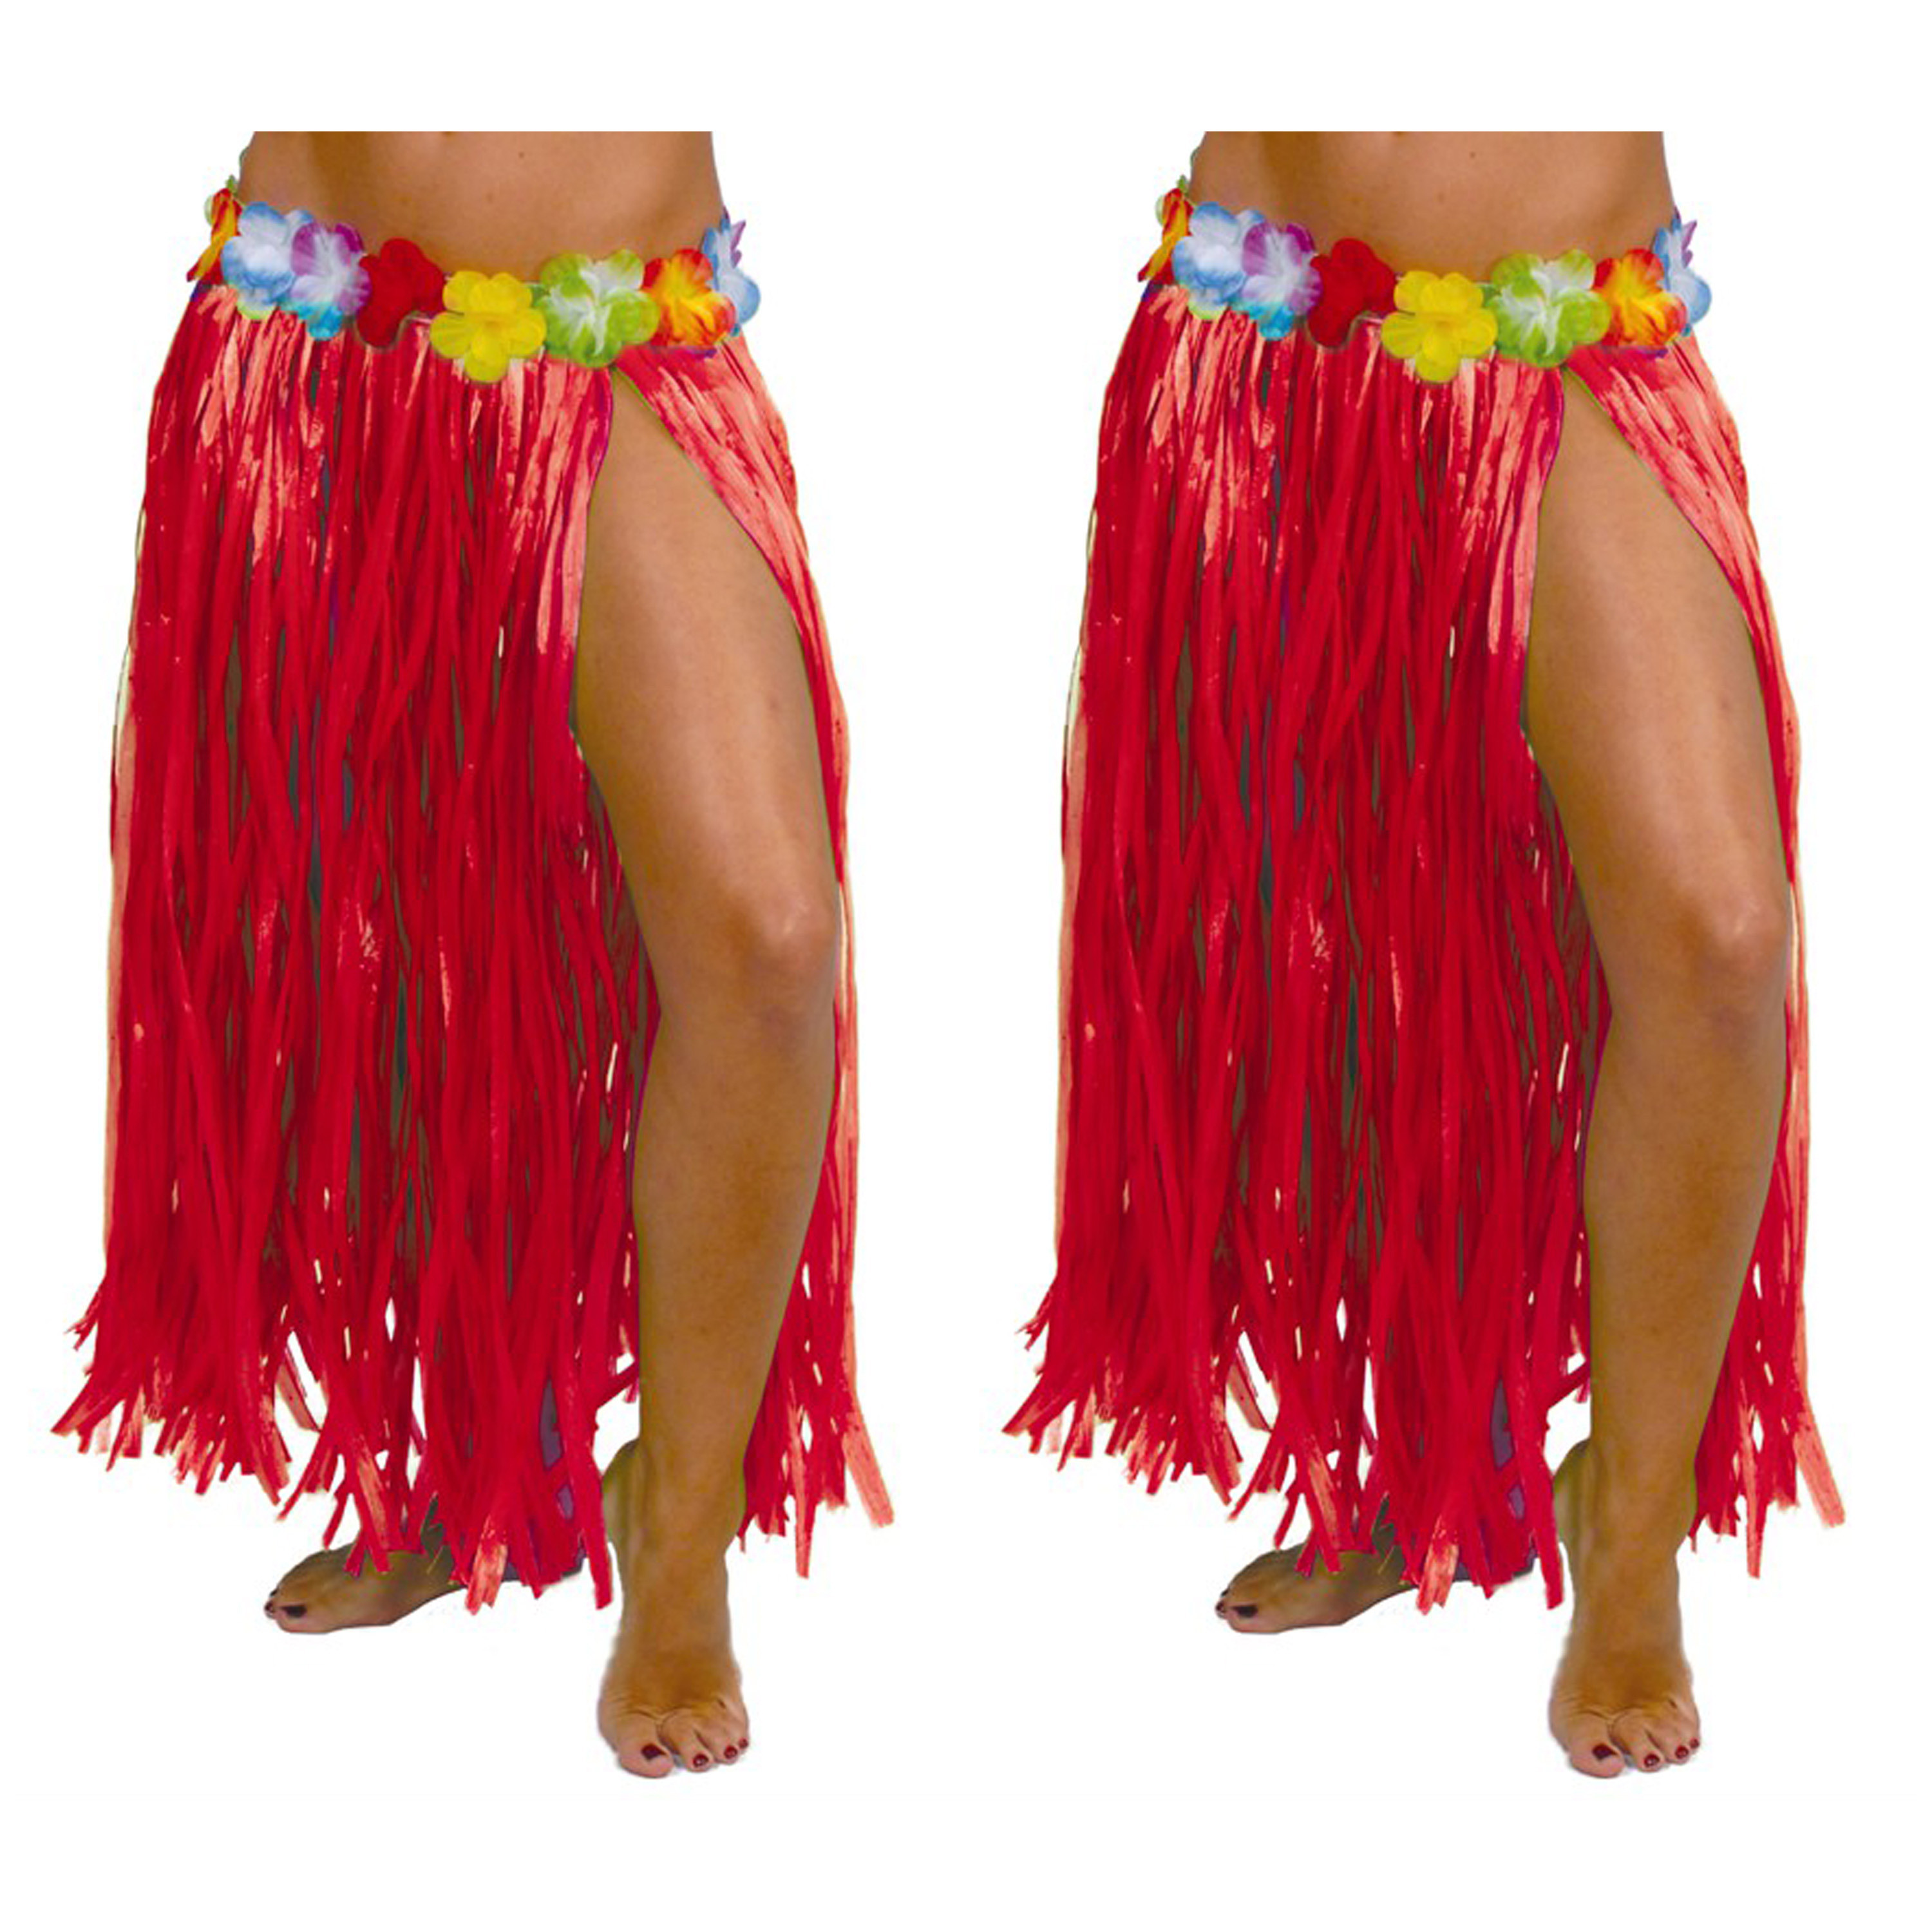 Hawaii verkleed rokje - 2x - voor volwassenen - rood - 75 cm - rieten hoela rokje - tropisch